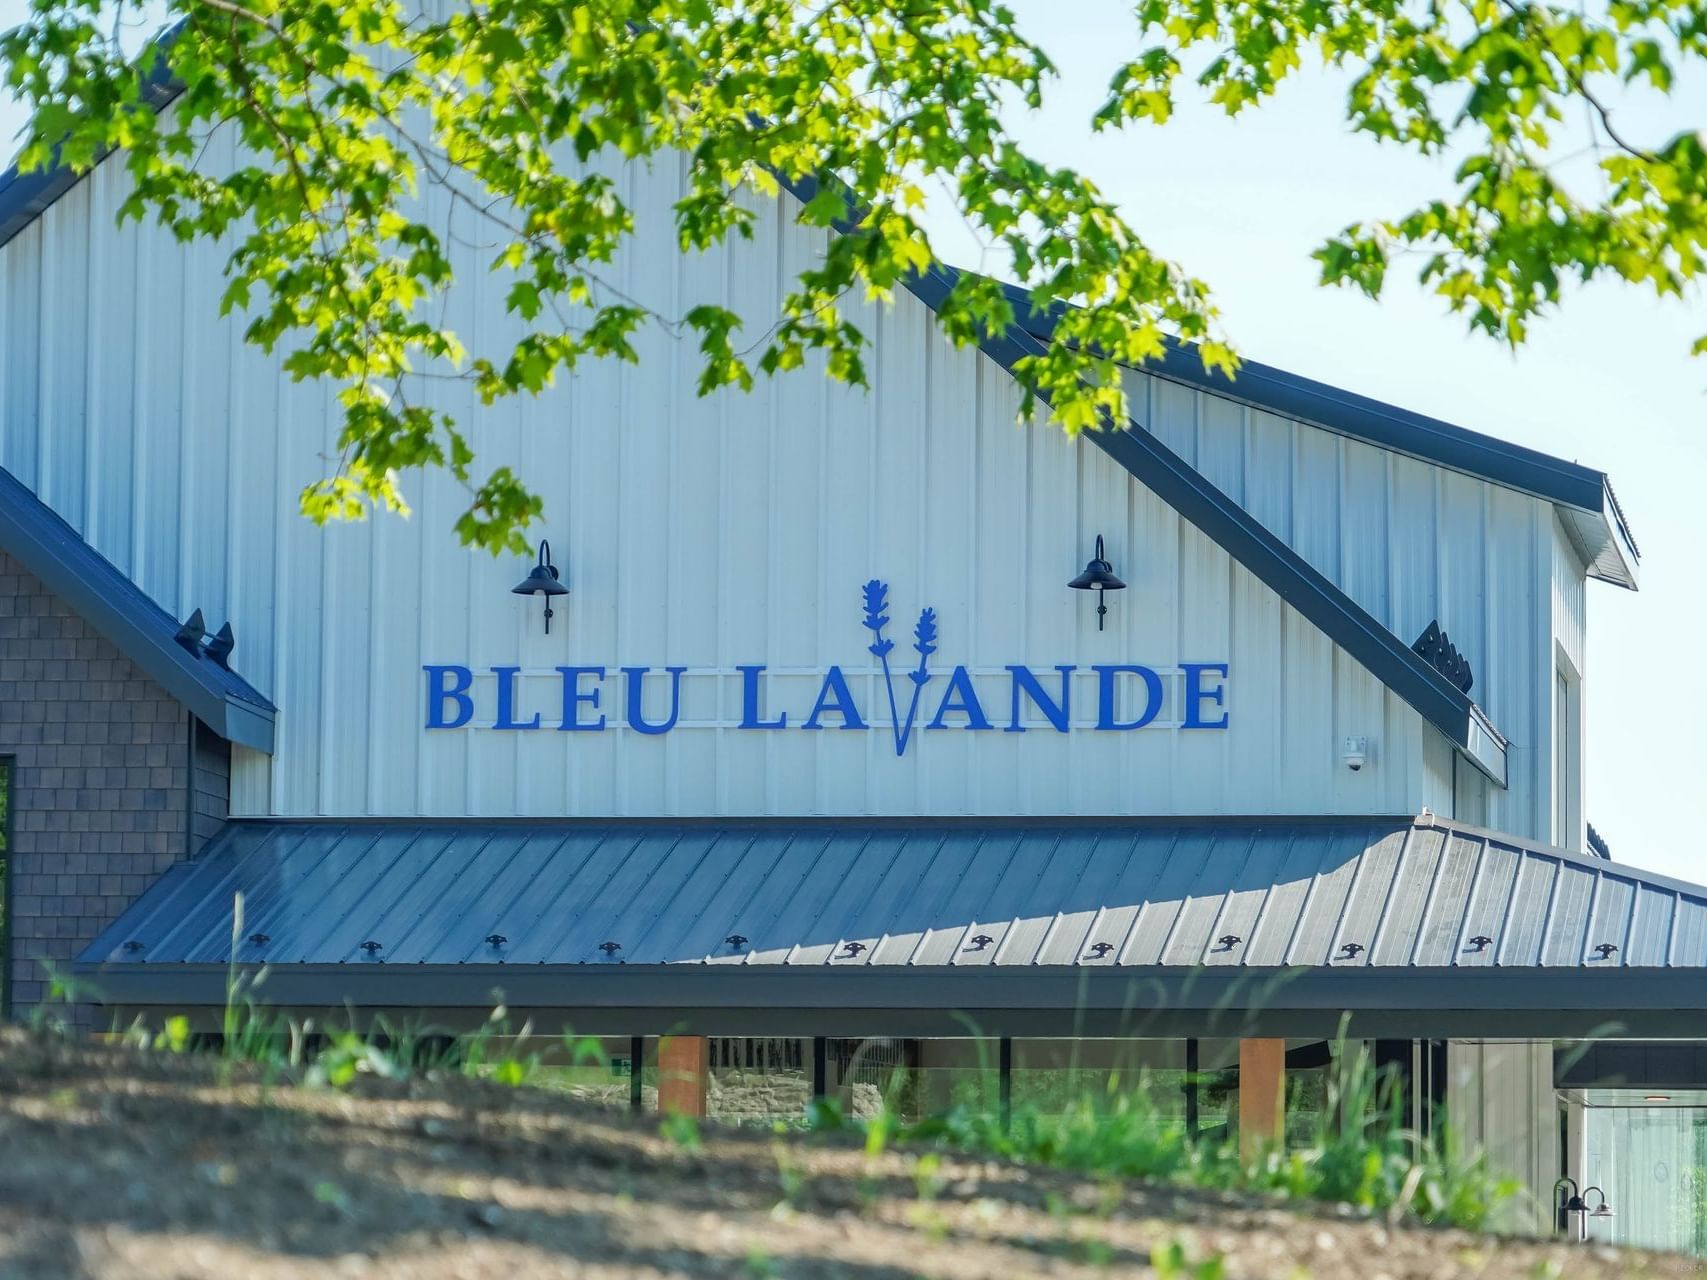 Exterior of the Bleu Lavande winery near Quartier Des Marinas